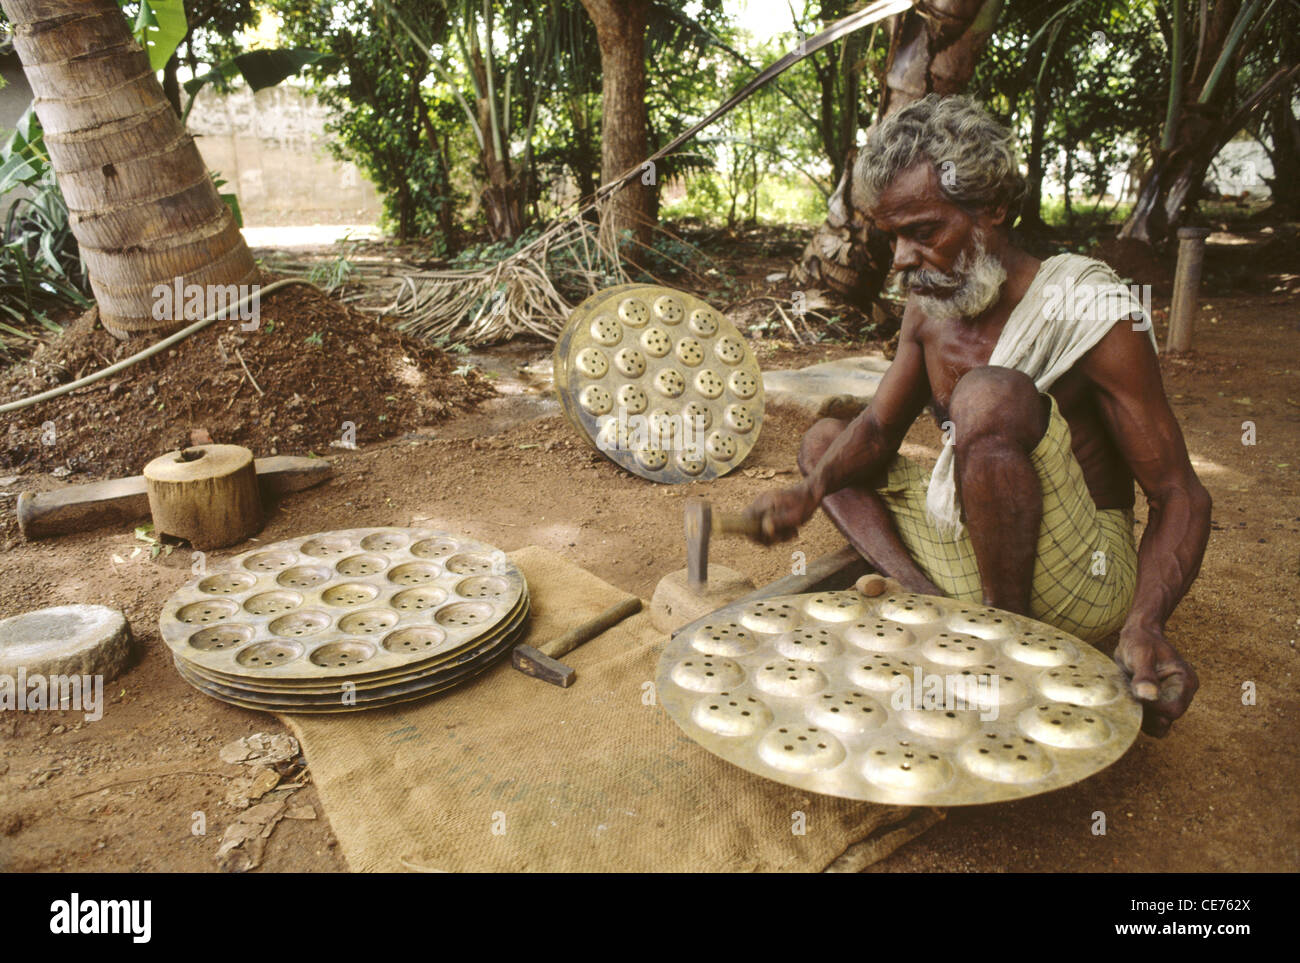 84761 MAA : indien de monter les plaques de cuisson les bras croisés Tamil nadu inde Banque D'Images